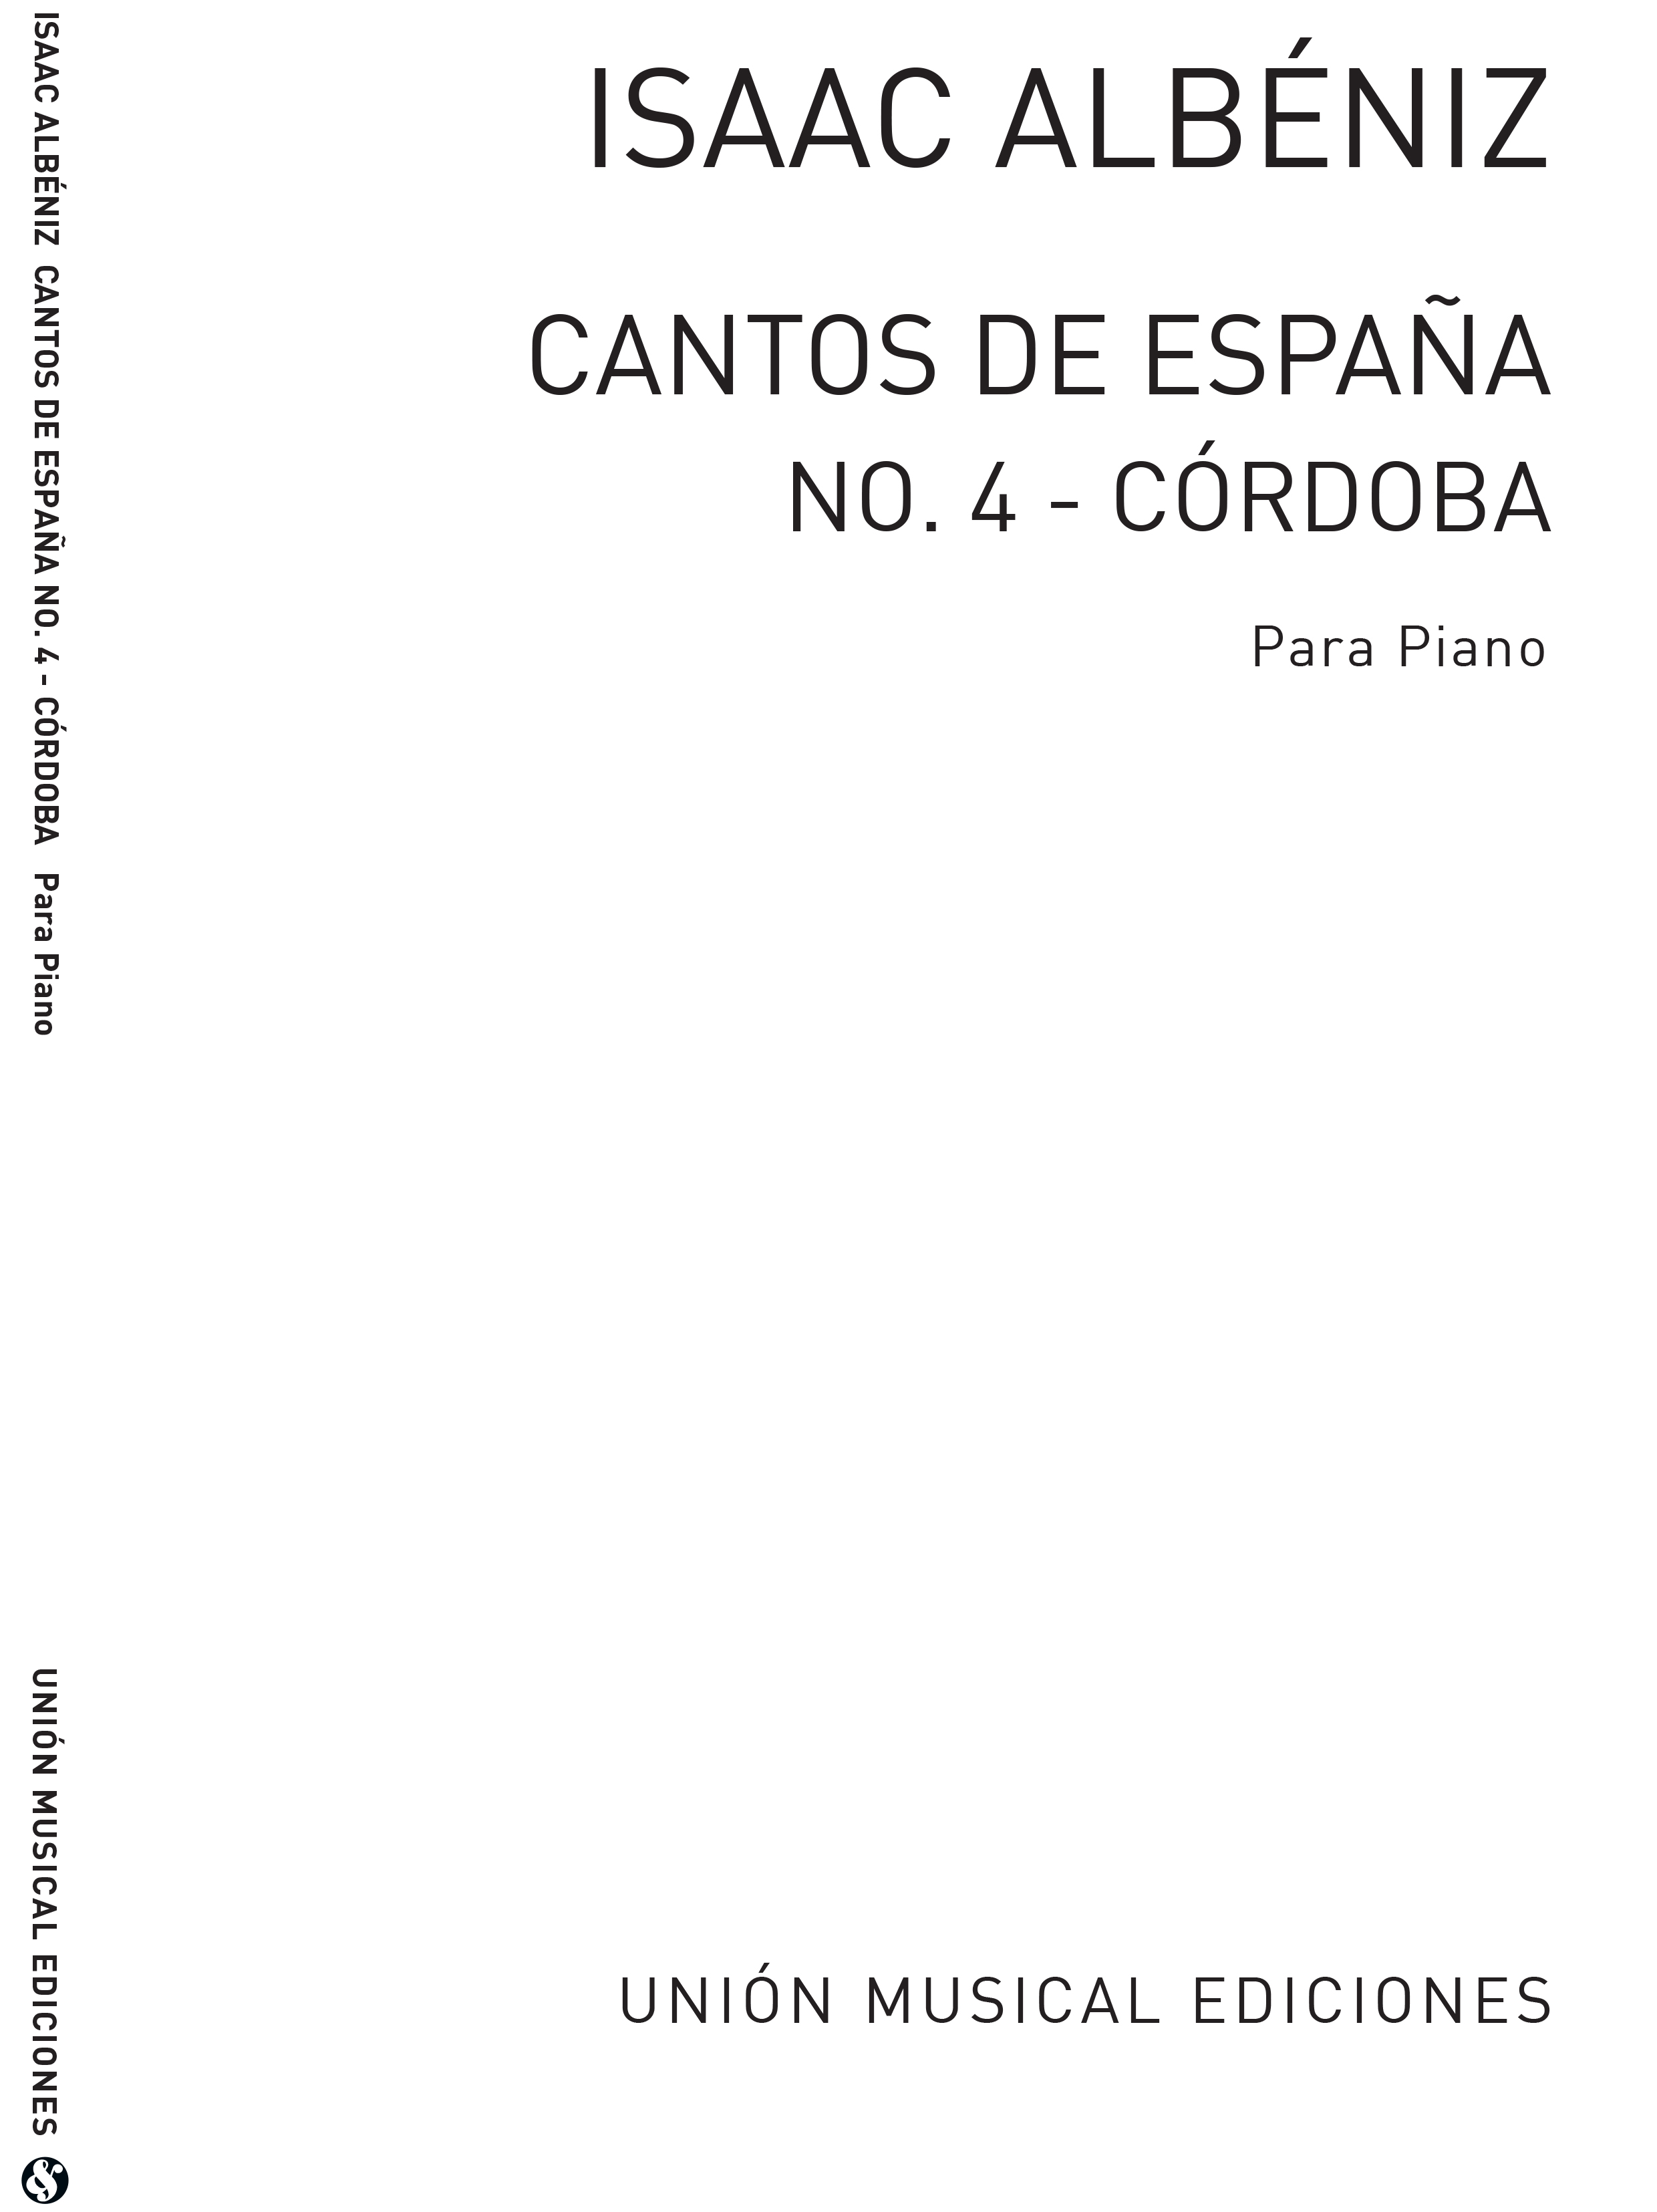 Isaac Albéniz: Albeniz Cordoba No.4 De Cantos De Espana Op.232: Piano: